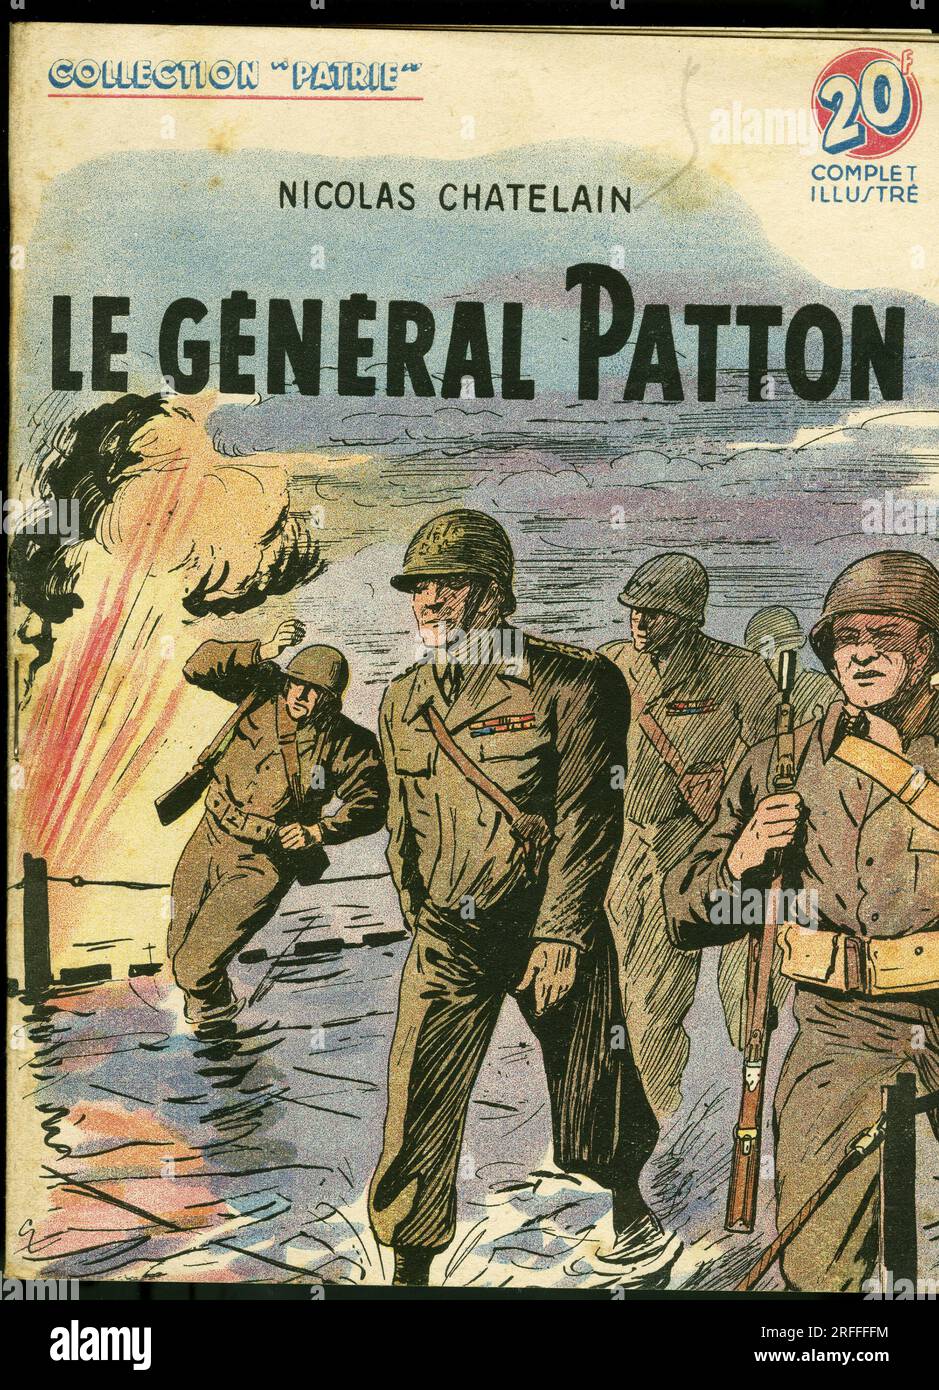 Couverture d'un illustre pour la jeunesse ' le General George Smith Patton (1885-1945)' de Nicolas Chatelain, edizioni Rouff, Collection Patrie, numero 92, 1949, Parigi. Foto Stock